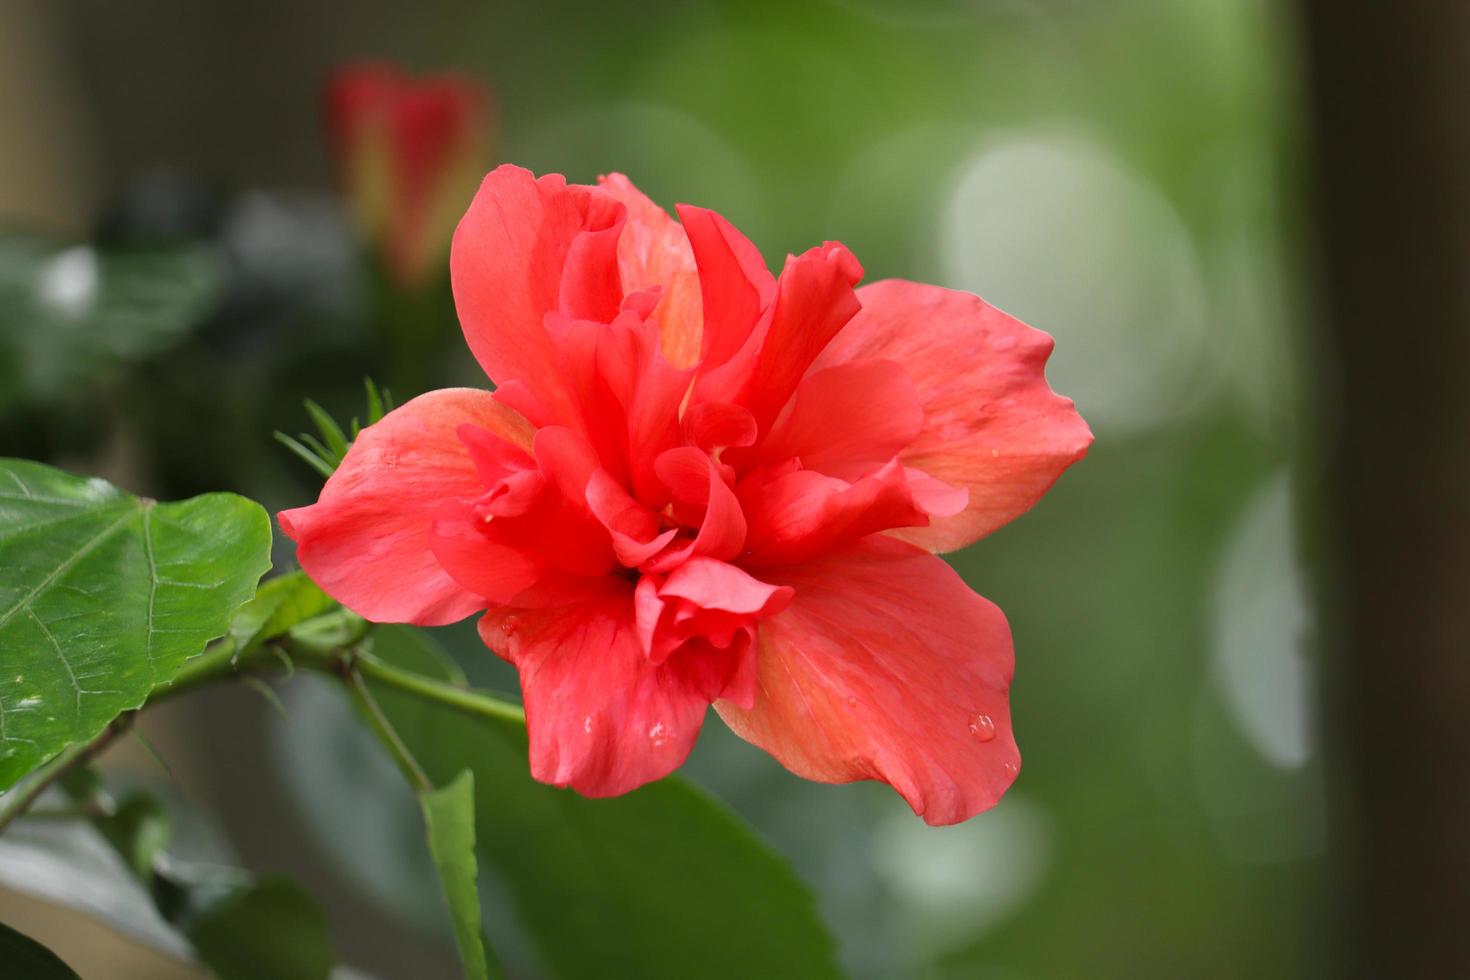 röd hibiskusblomma i trädgården foto